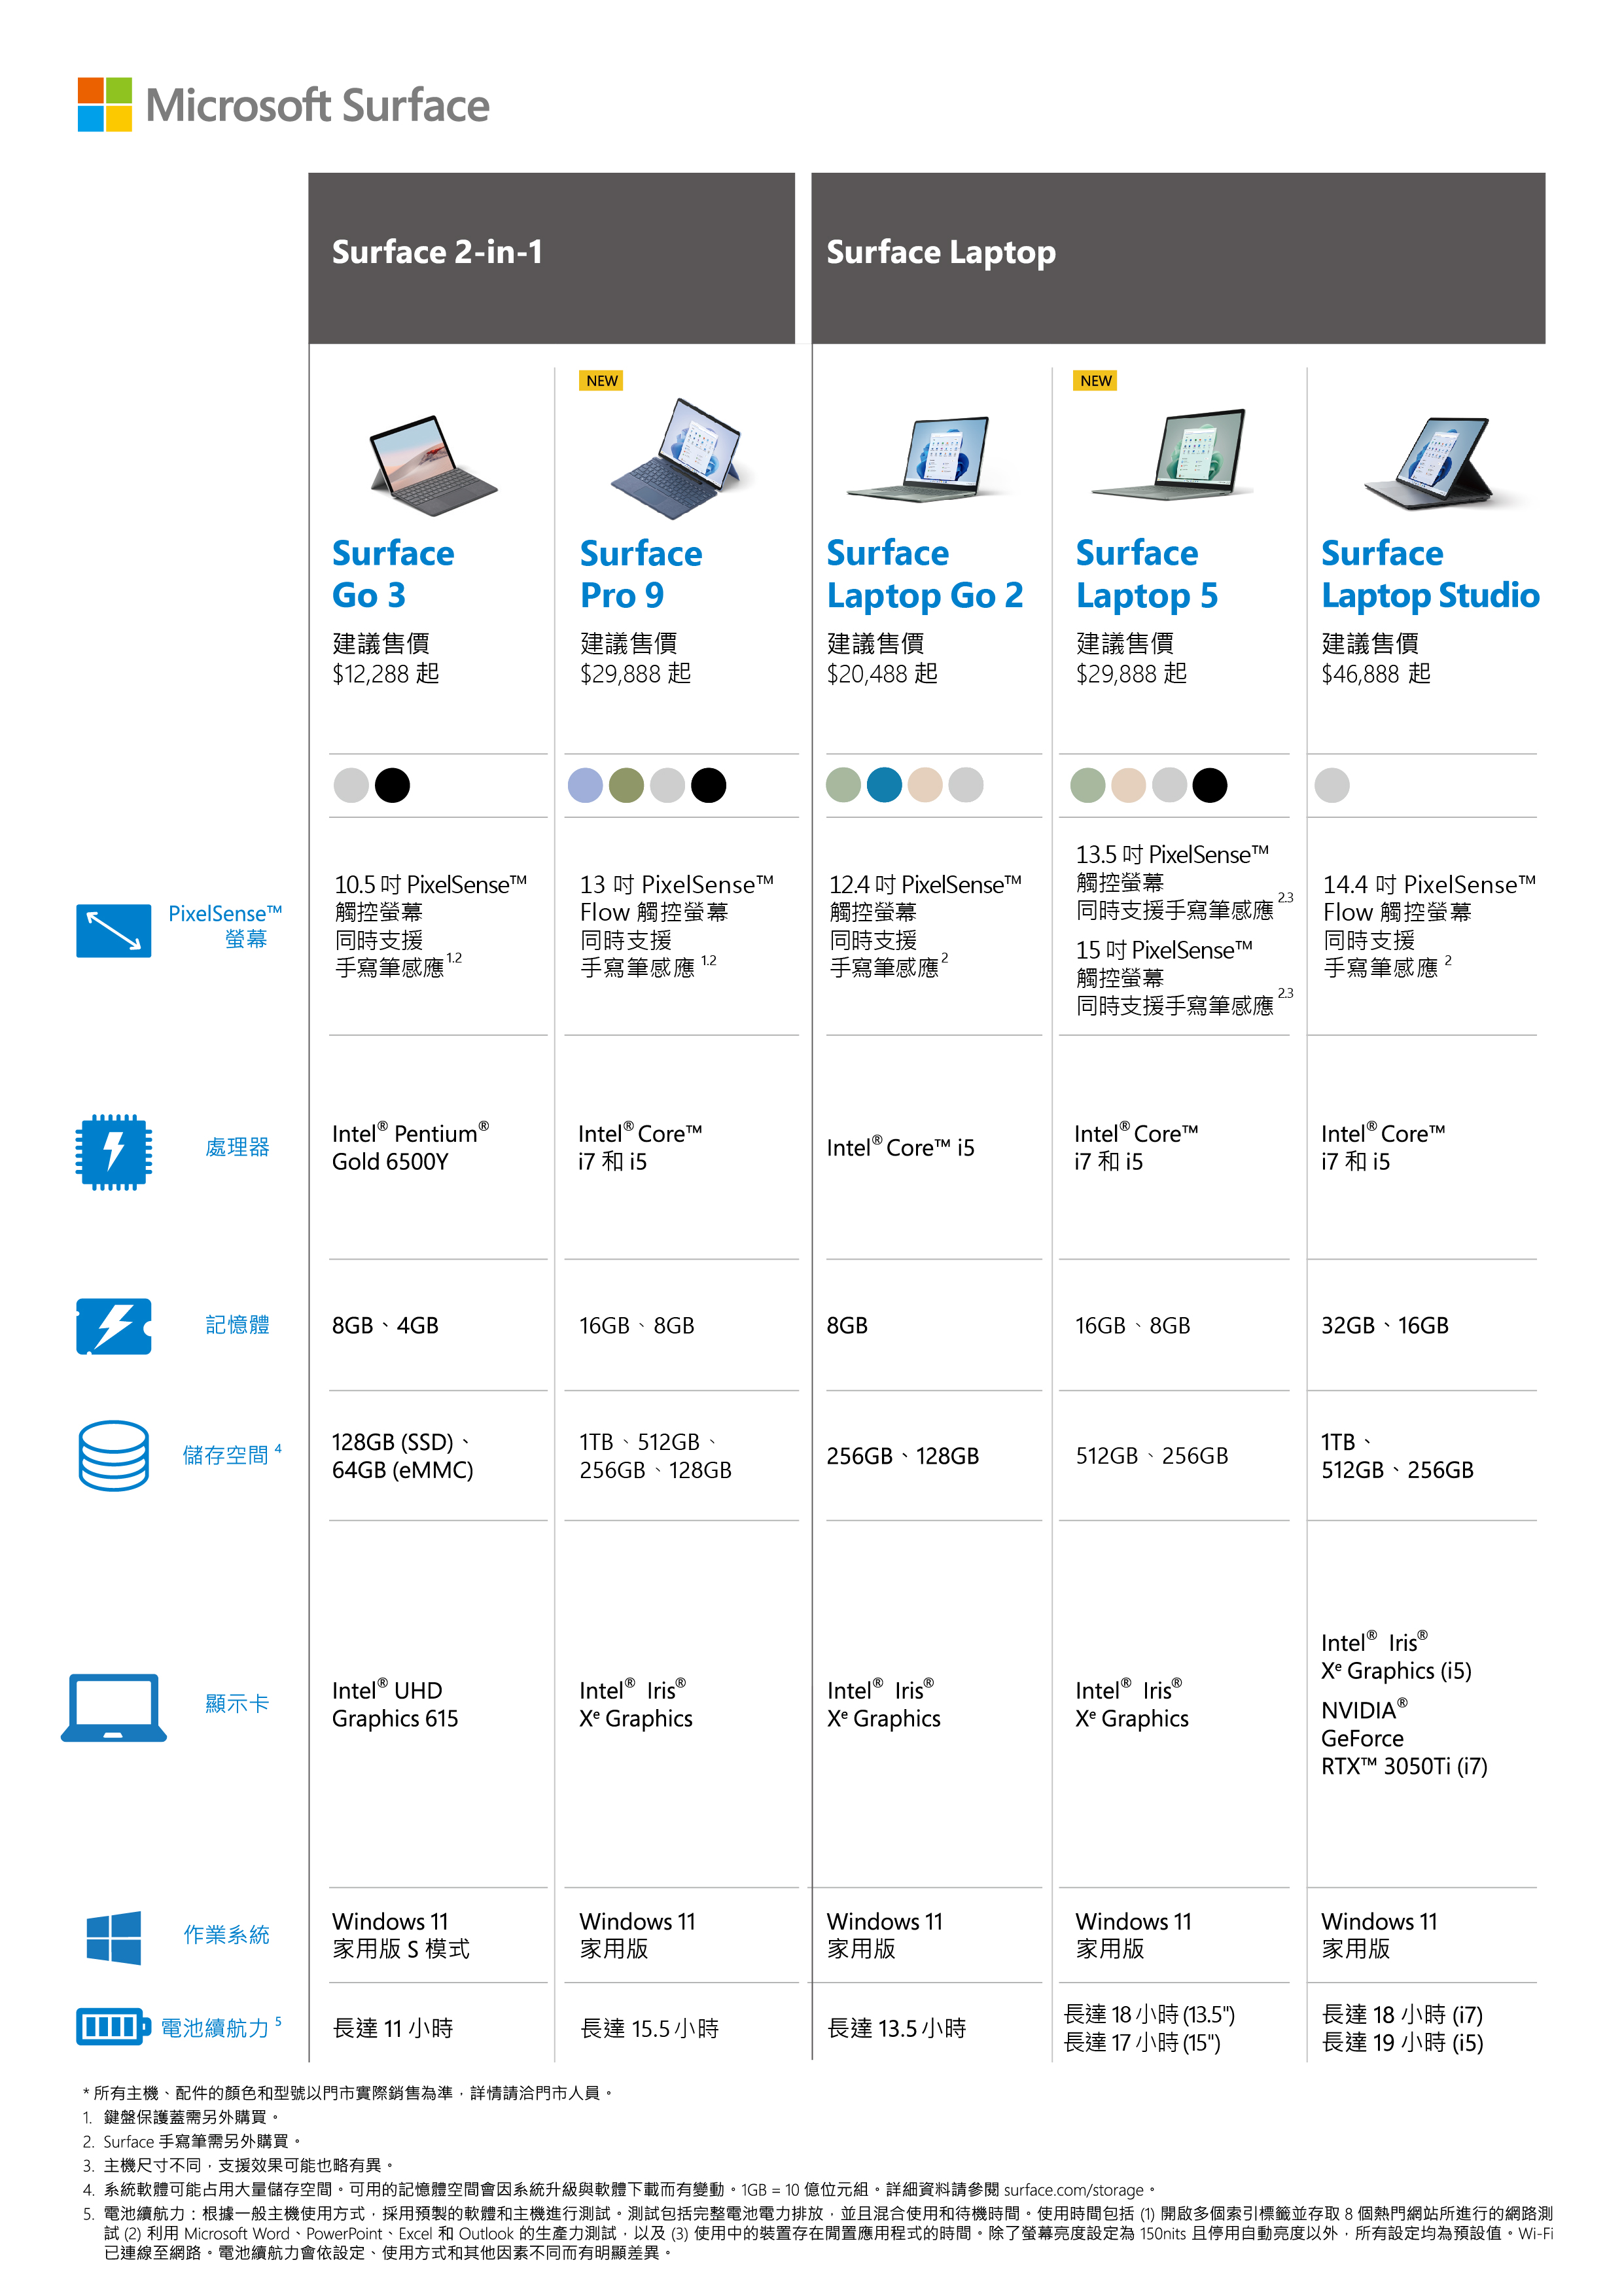 Microsoft 微軟Surface Pro 9(i7-1255U/16G/1TB SSD/13”/Win11)觸控(主機+無槽鍵盤)組-  PChome 24h購物